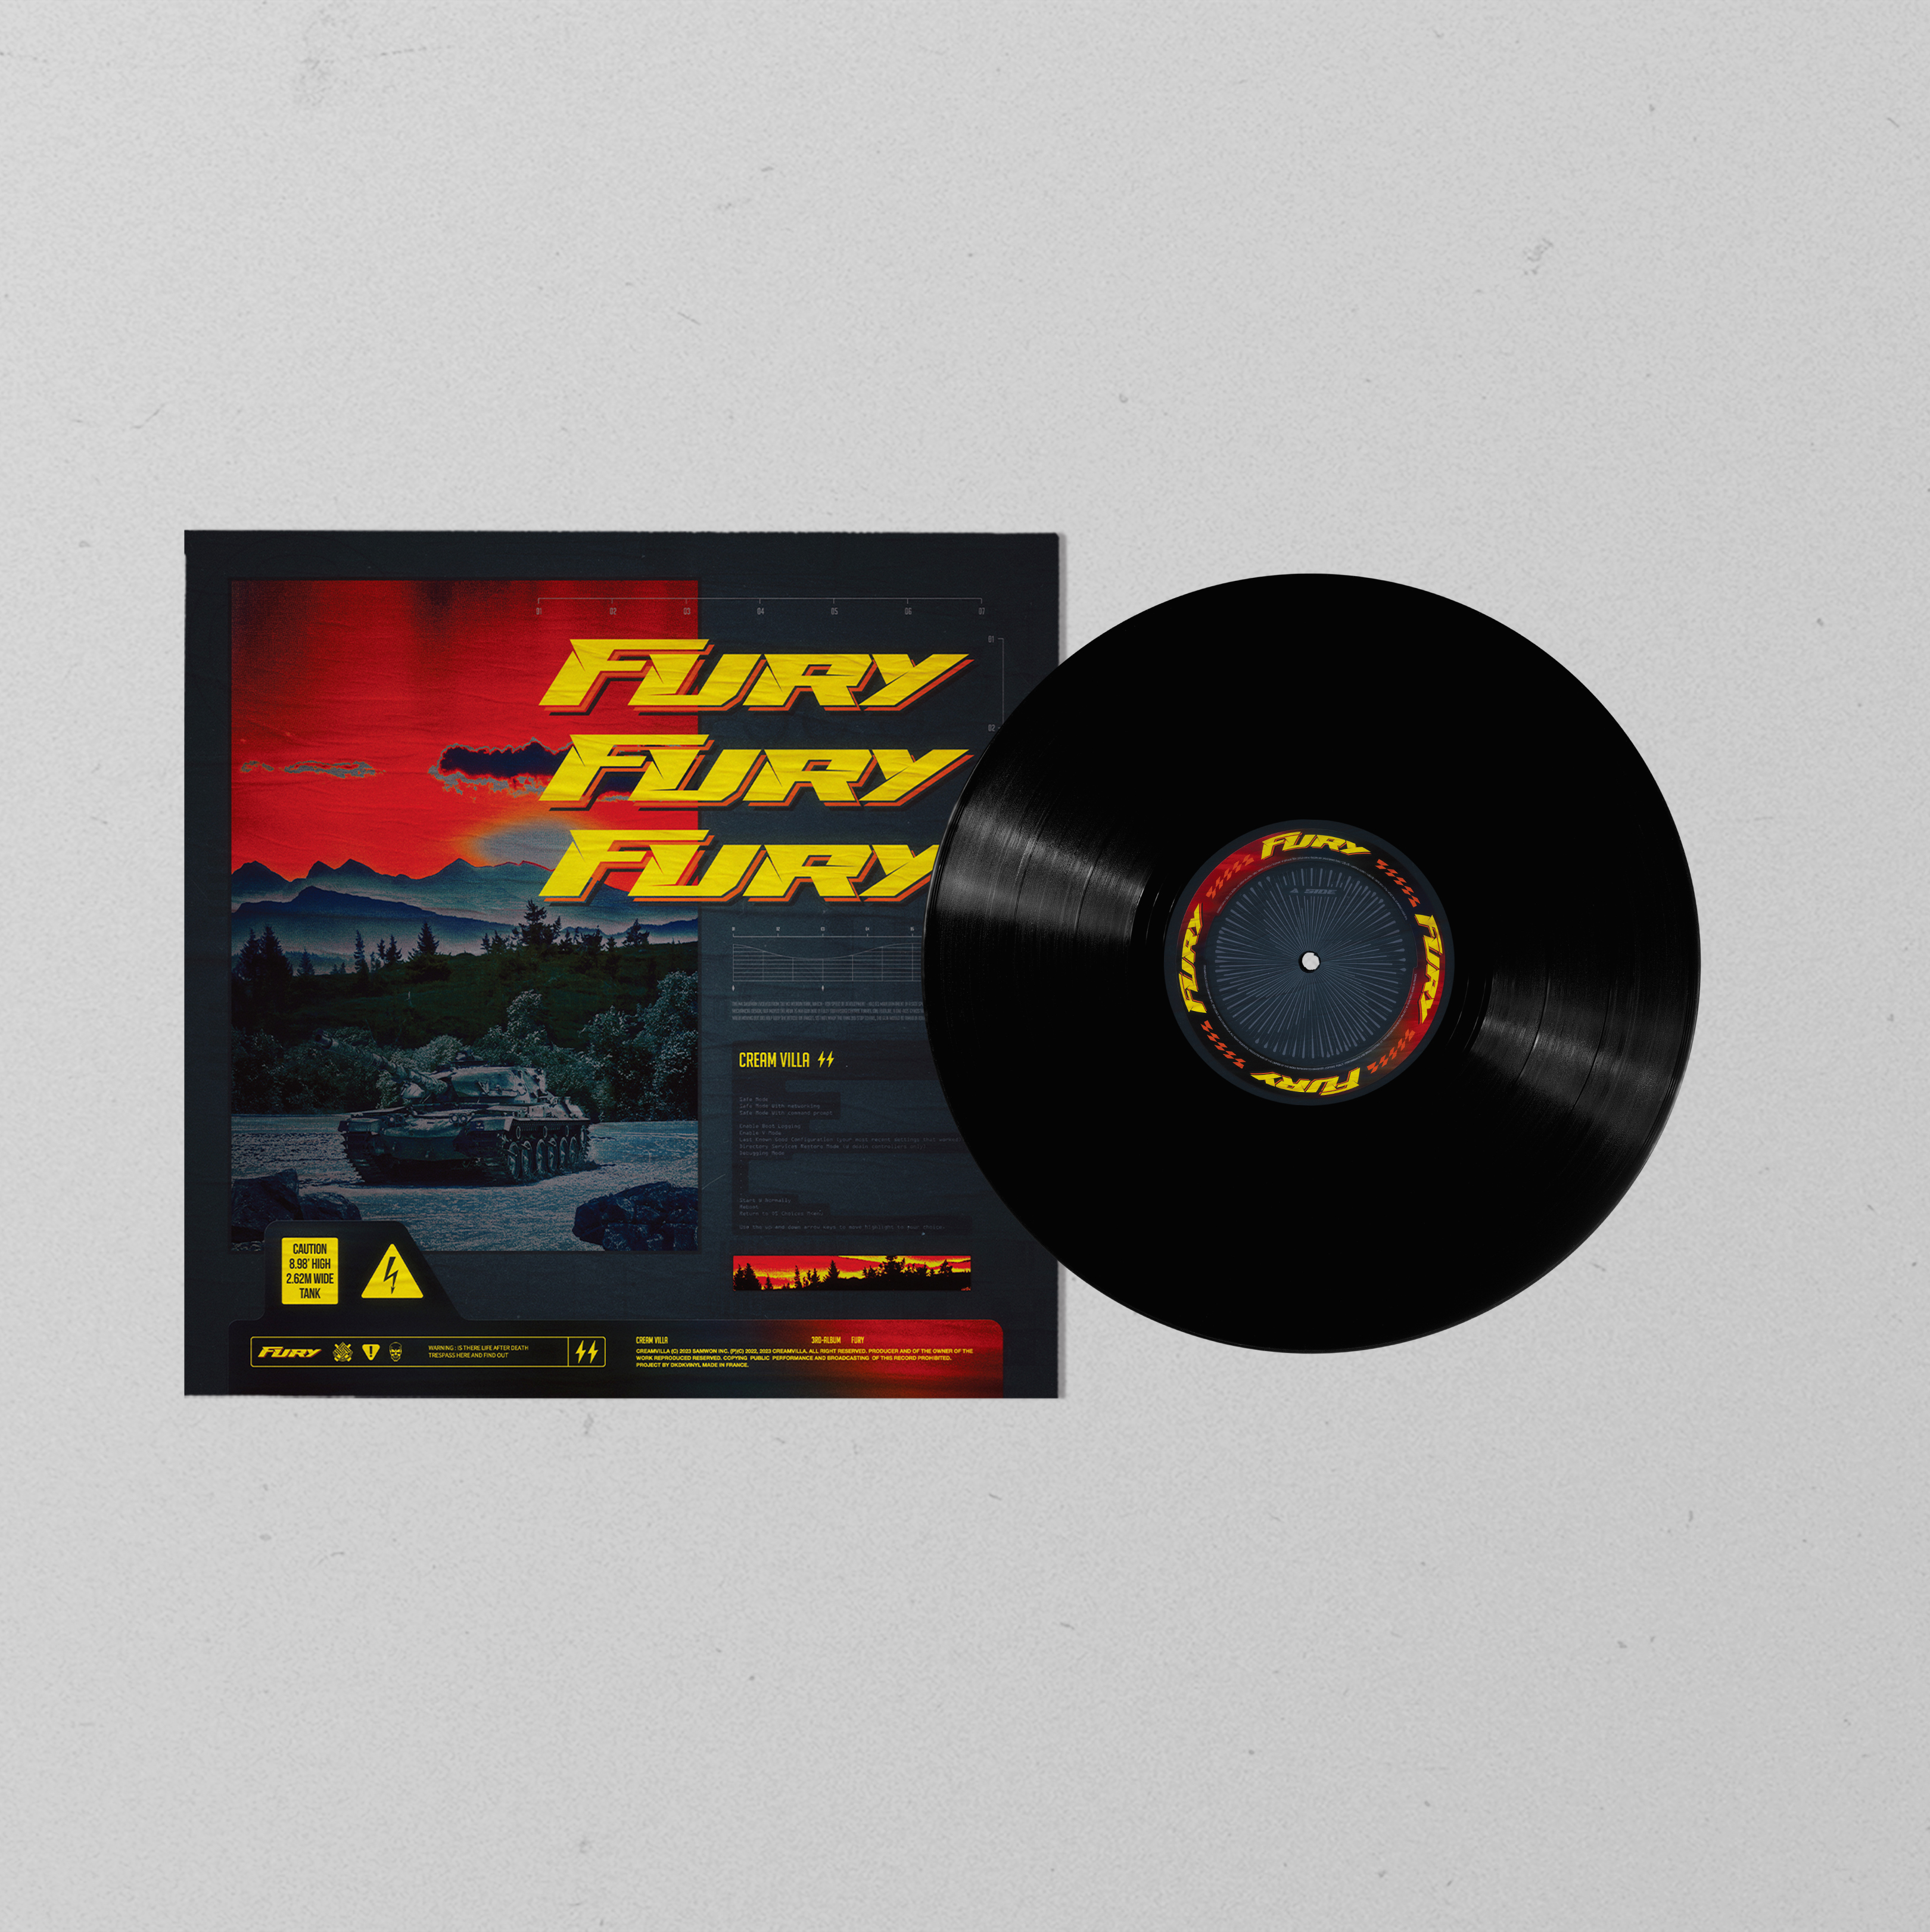 예약판매[PRE-ORDER] 크림빌라 - FURY [180g, 1LP, Black vinyl]